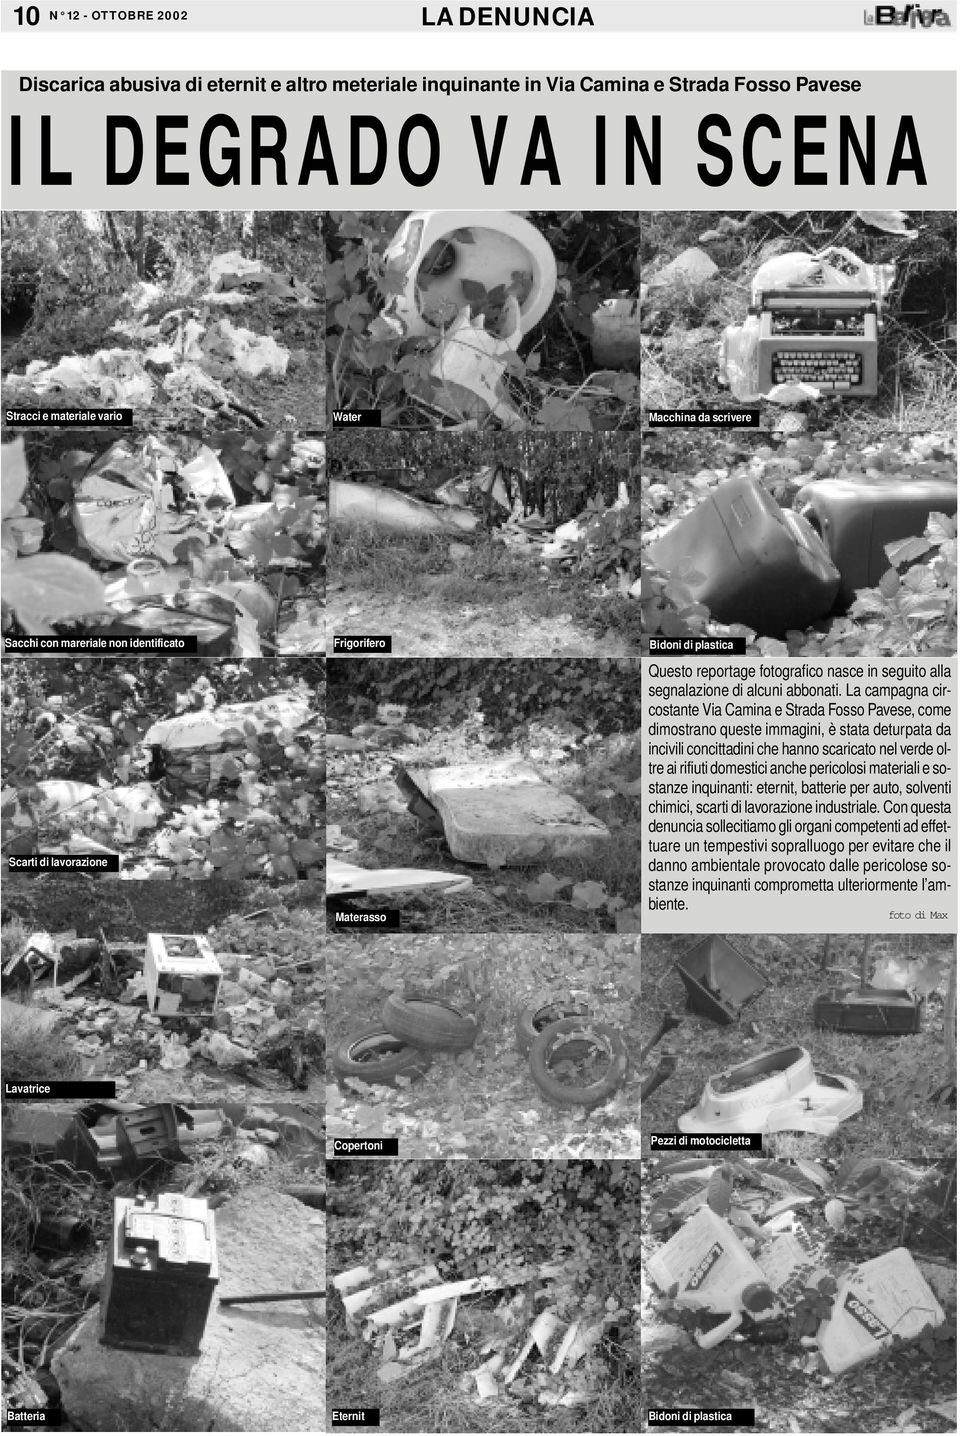 La campagna circostante Via Camina e Strada Fosso Pavese, come dimostrano queste immagini, è stata deturpata da incivili concittadini che hanno scaricato nel verde oltre ai rifiuti domestici anche